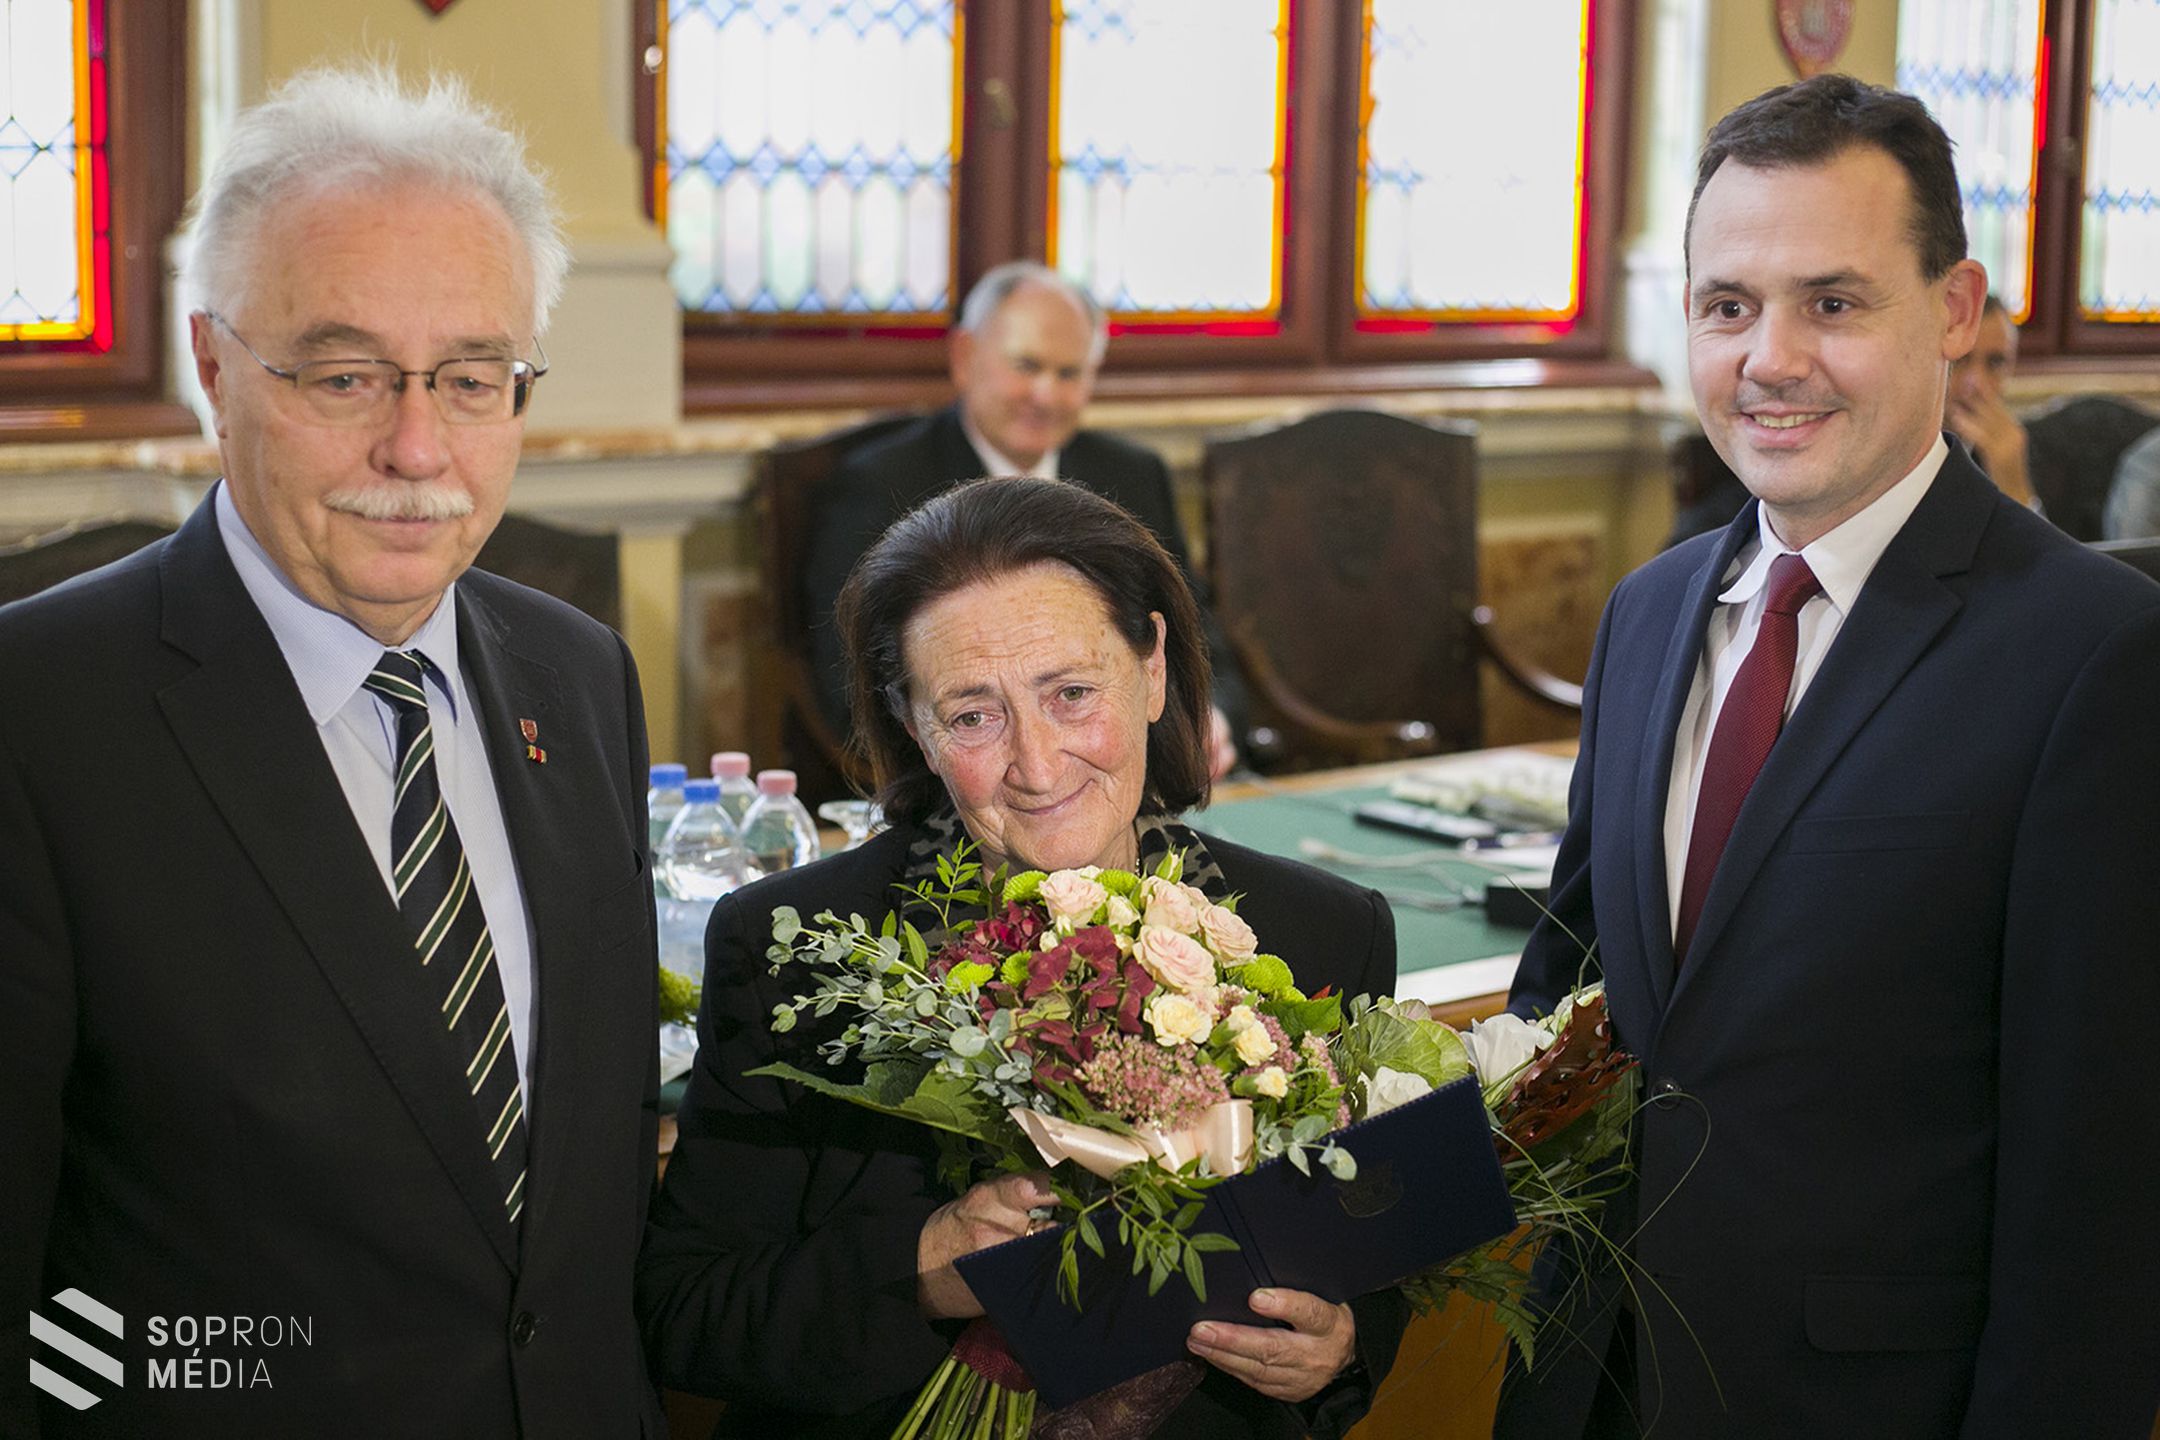 Dr. Varga Mária kapta idén a Győr-Moson-Sopron Megye Szolgálatáért Díjat!